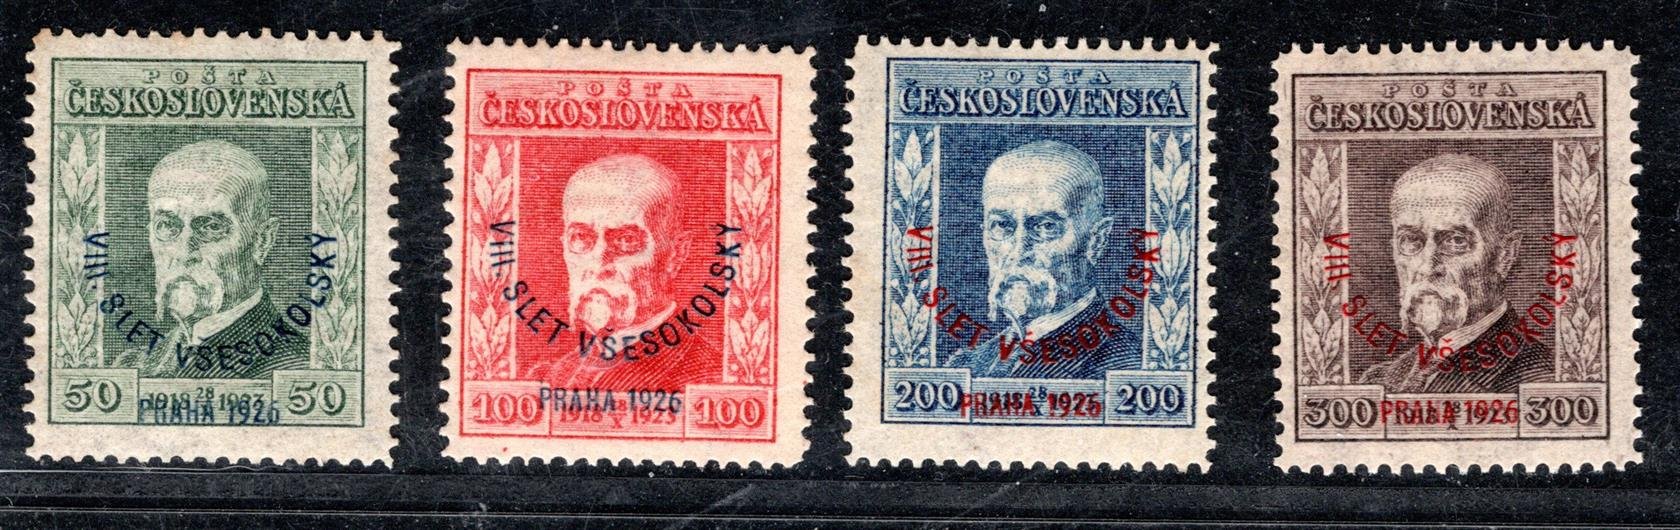 183 - 186 vše  P8  ; Kompletní série Masaryk s přetiskem Slet- všechny známky prusvitka P8 - zkoušeno 